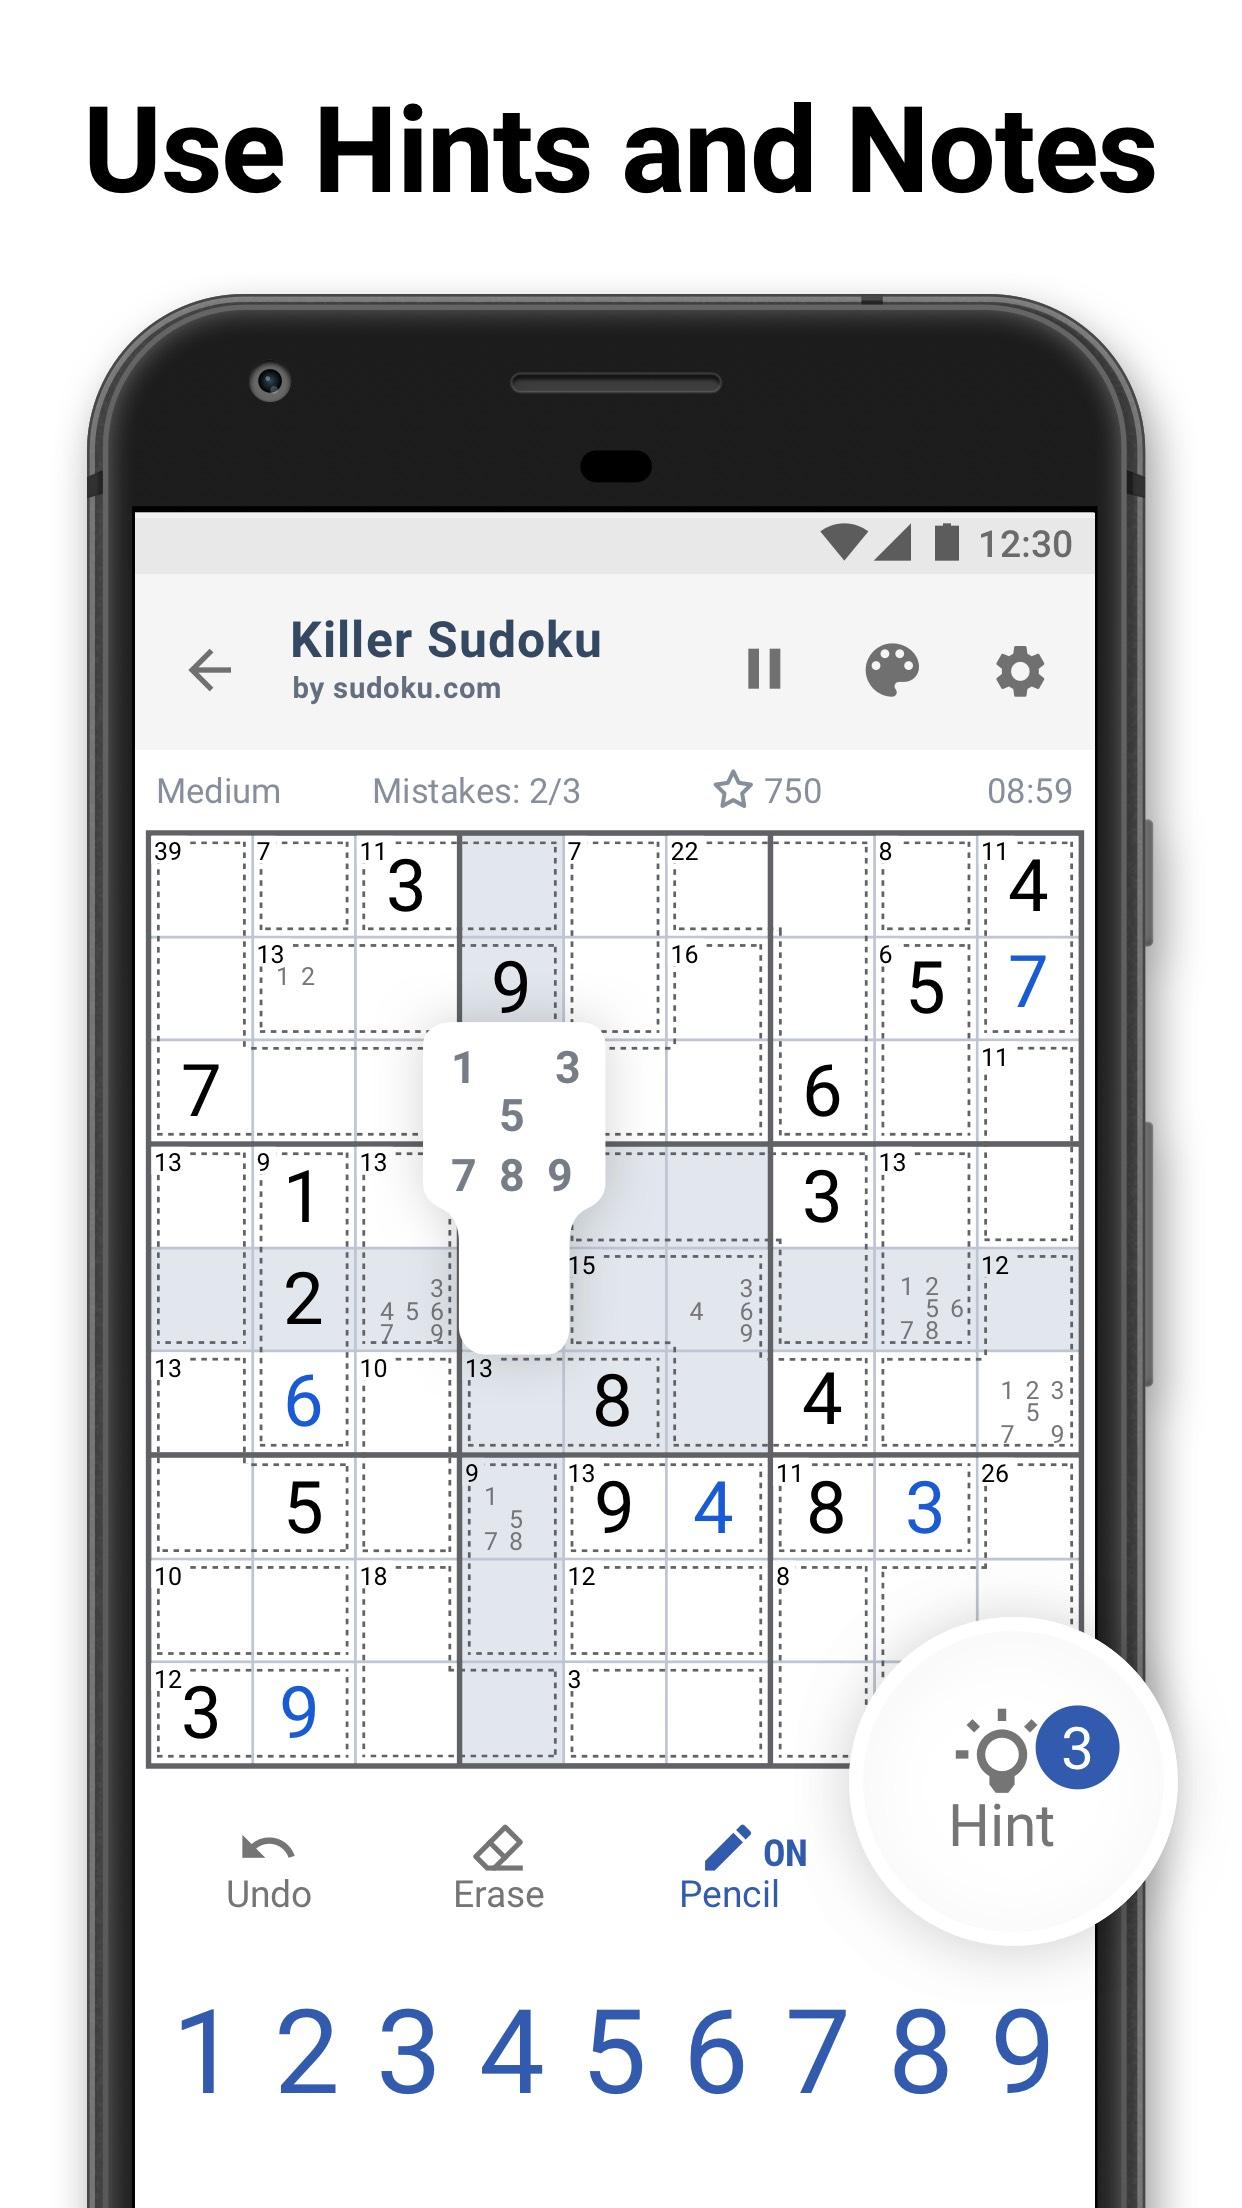 Killer Sudoku by Sudoku.com - Free Logic Puzzles 1.2.1 Screenshot 7